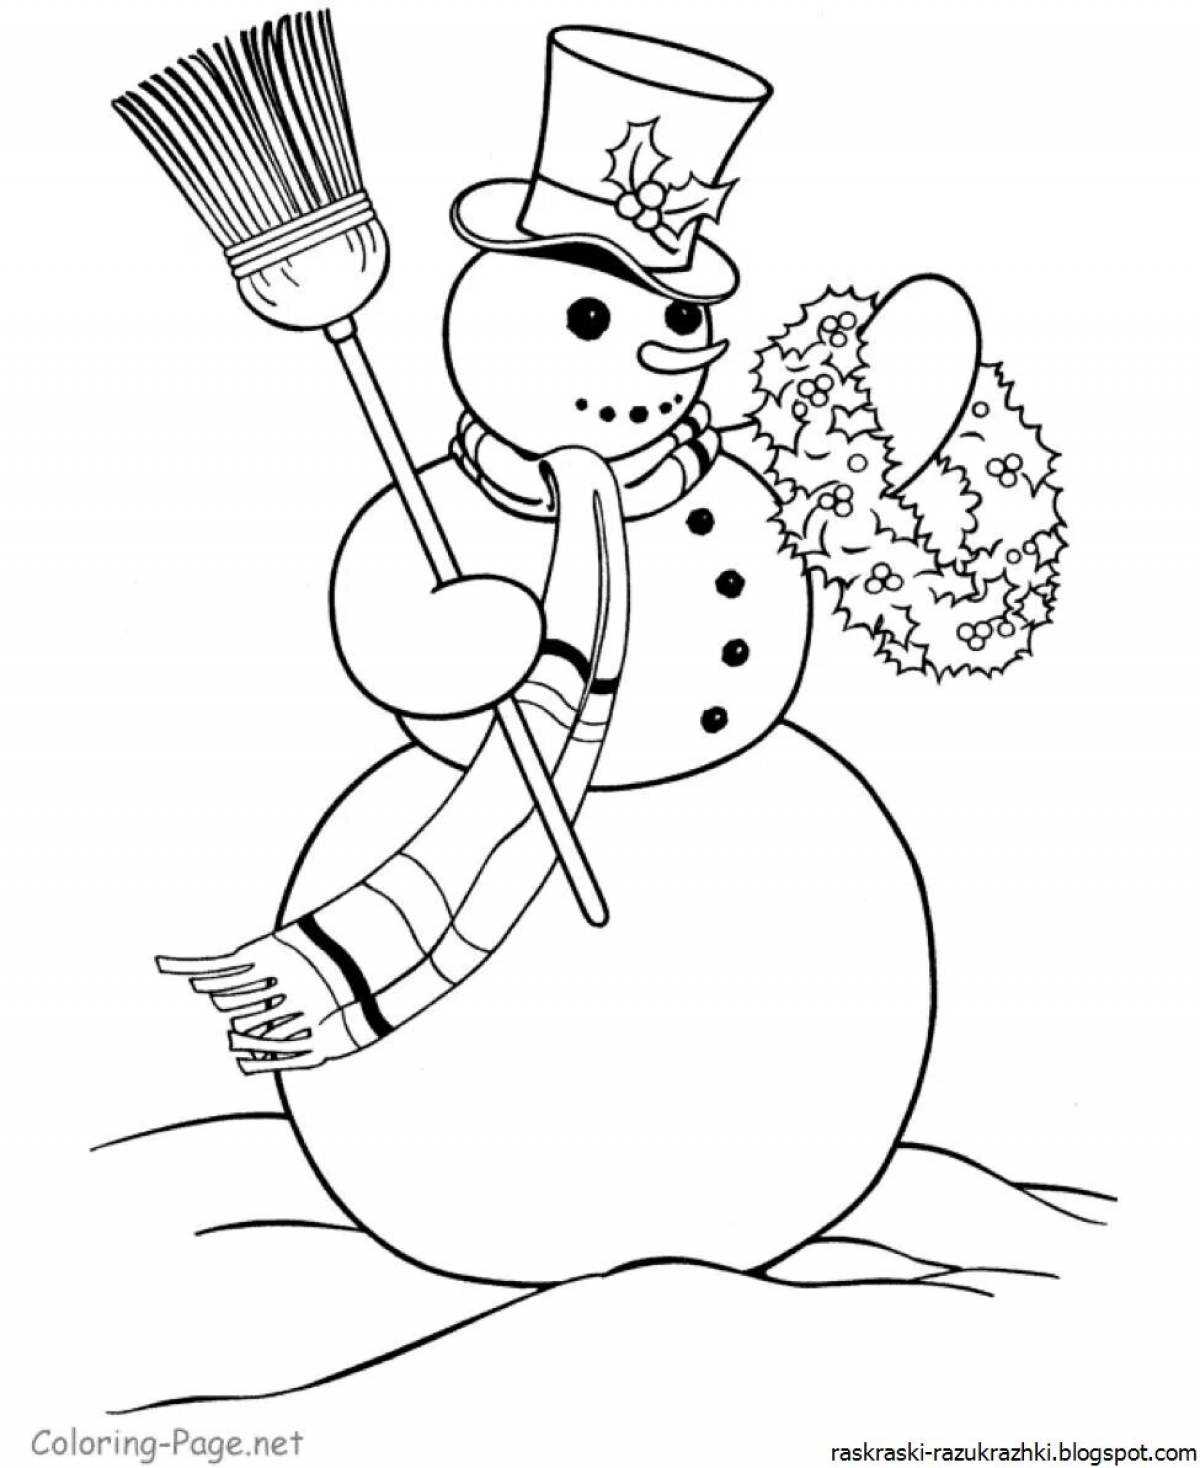 Снеговик рисунок для детей #2